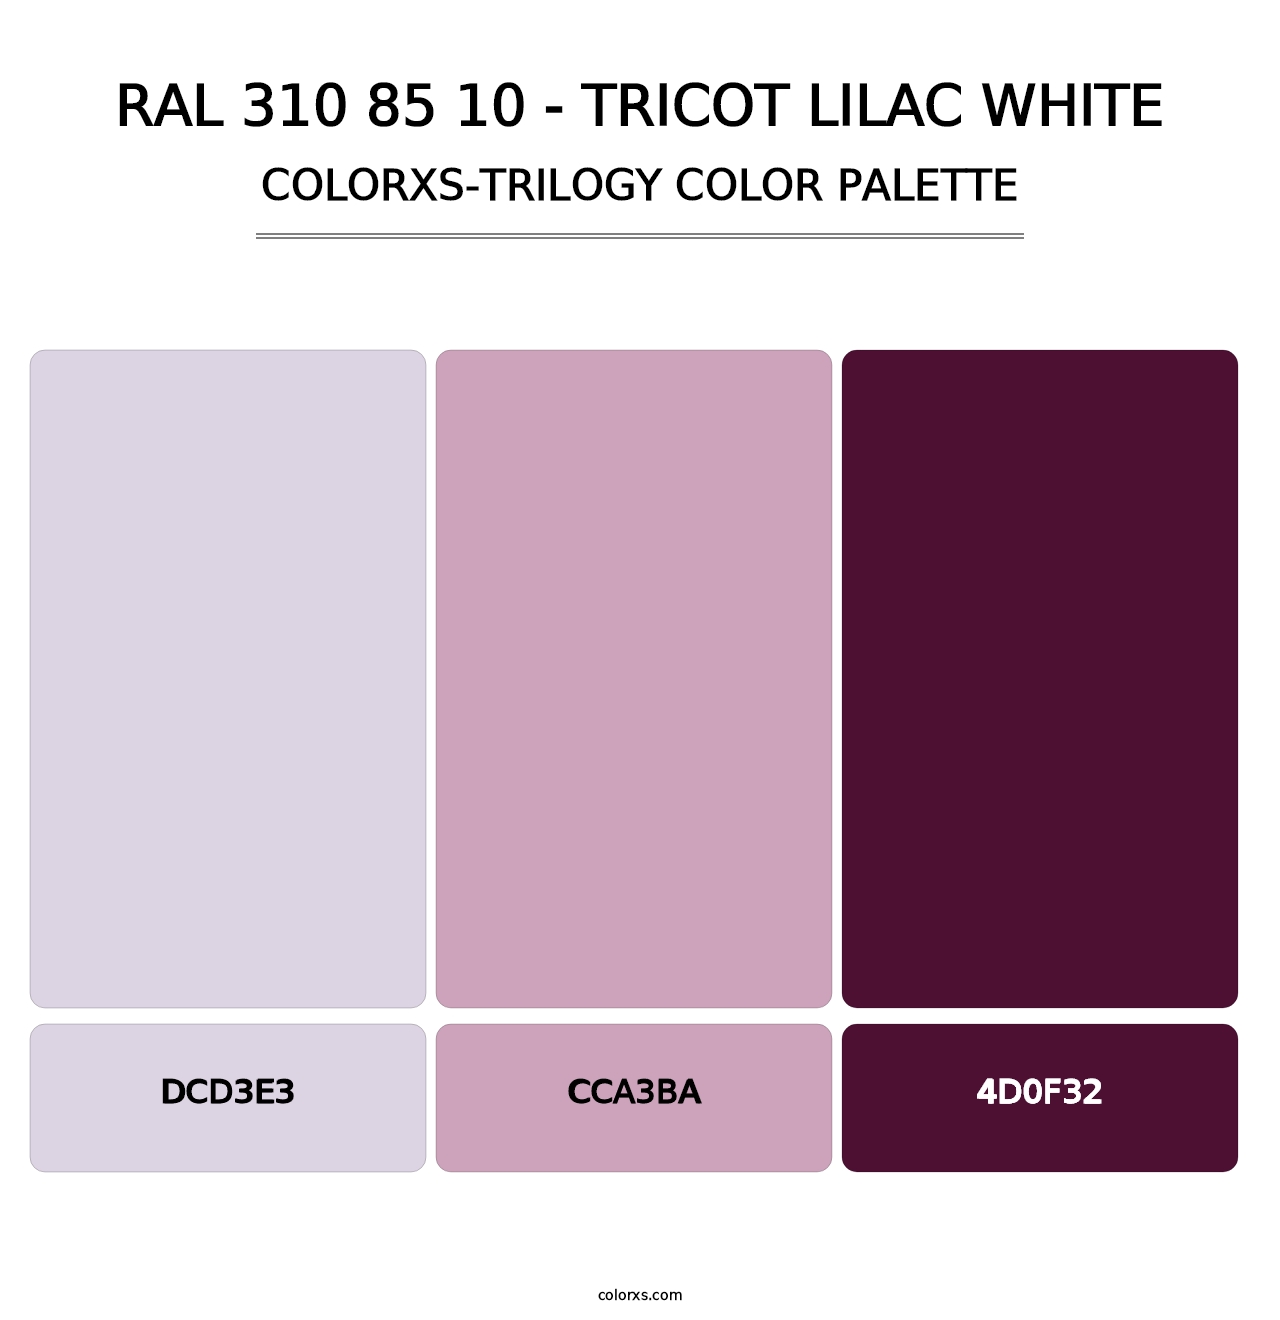 RAL 310 85 10 - Tricot Lilac White - Colorxs Trilogy Palette